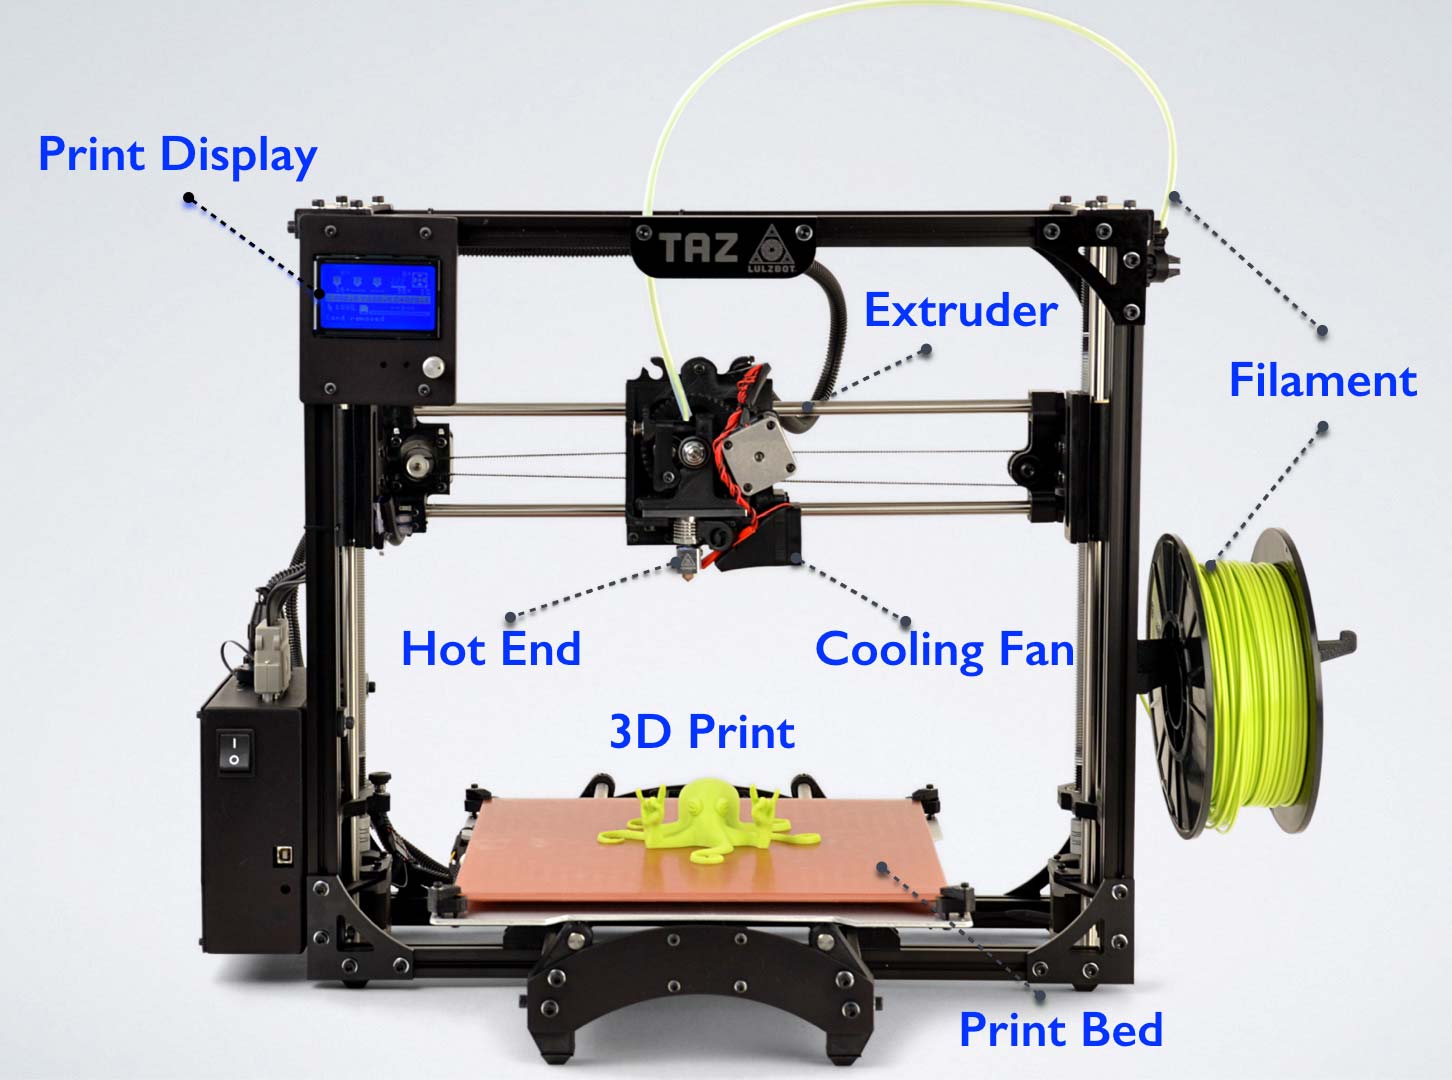 Parts of a 3D printer